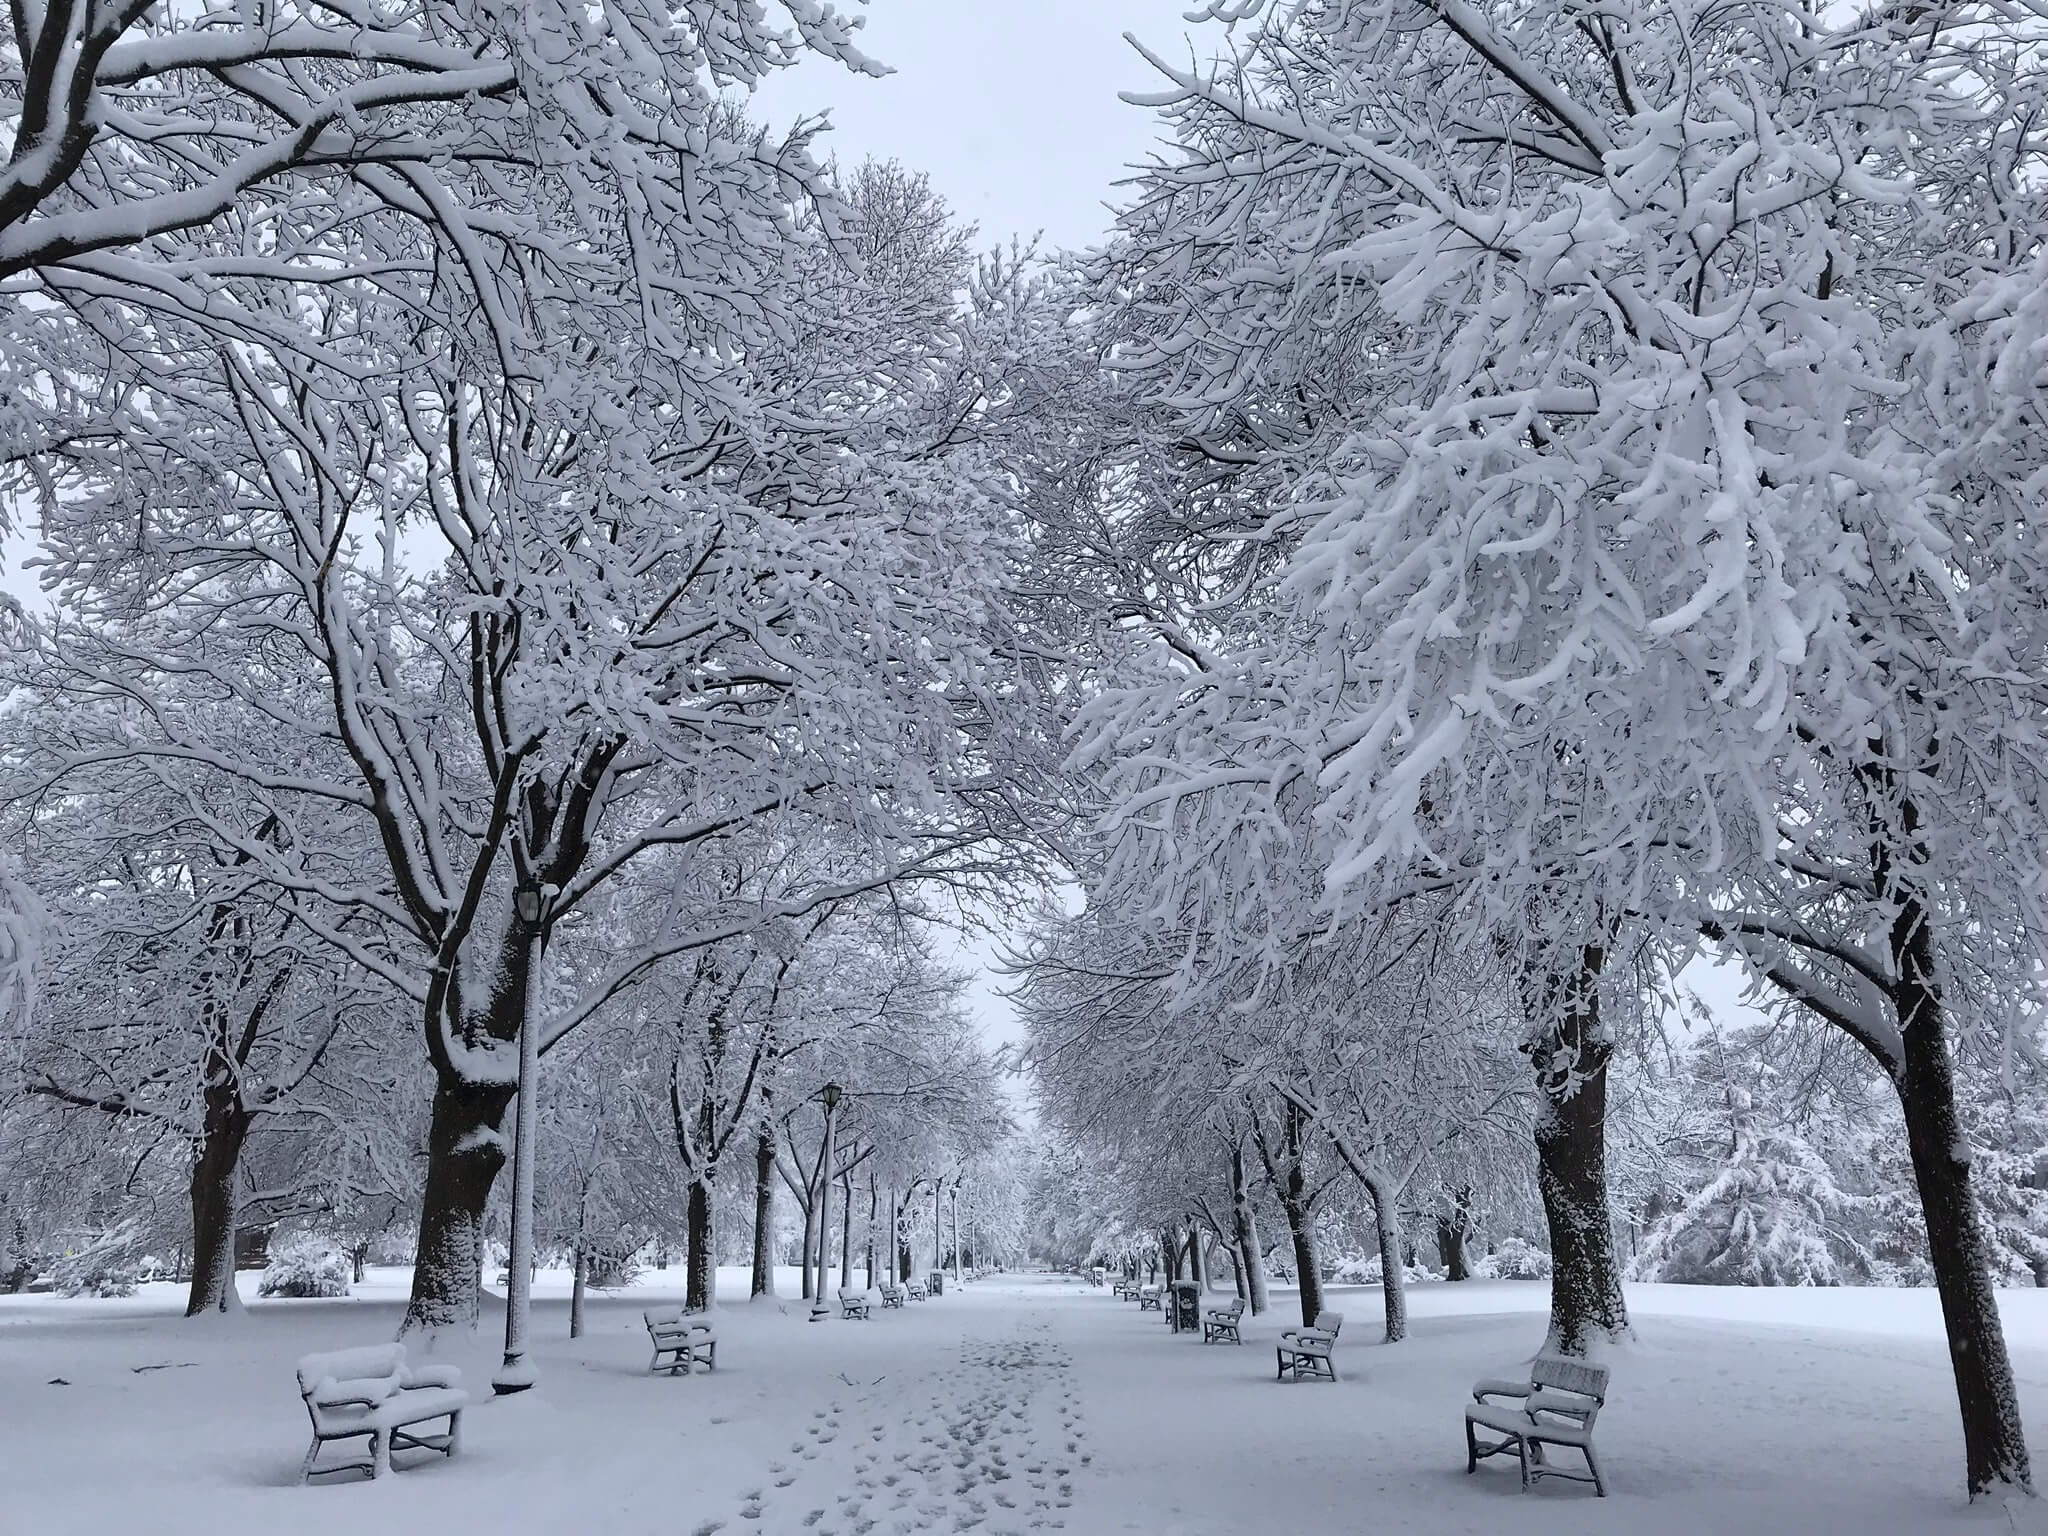 a snowy park